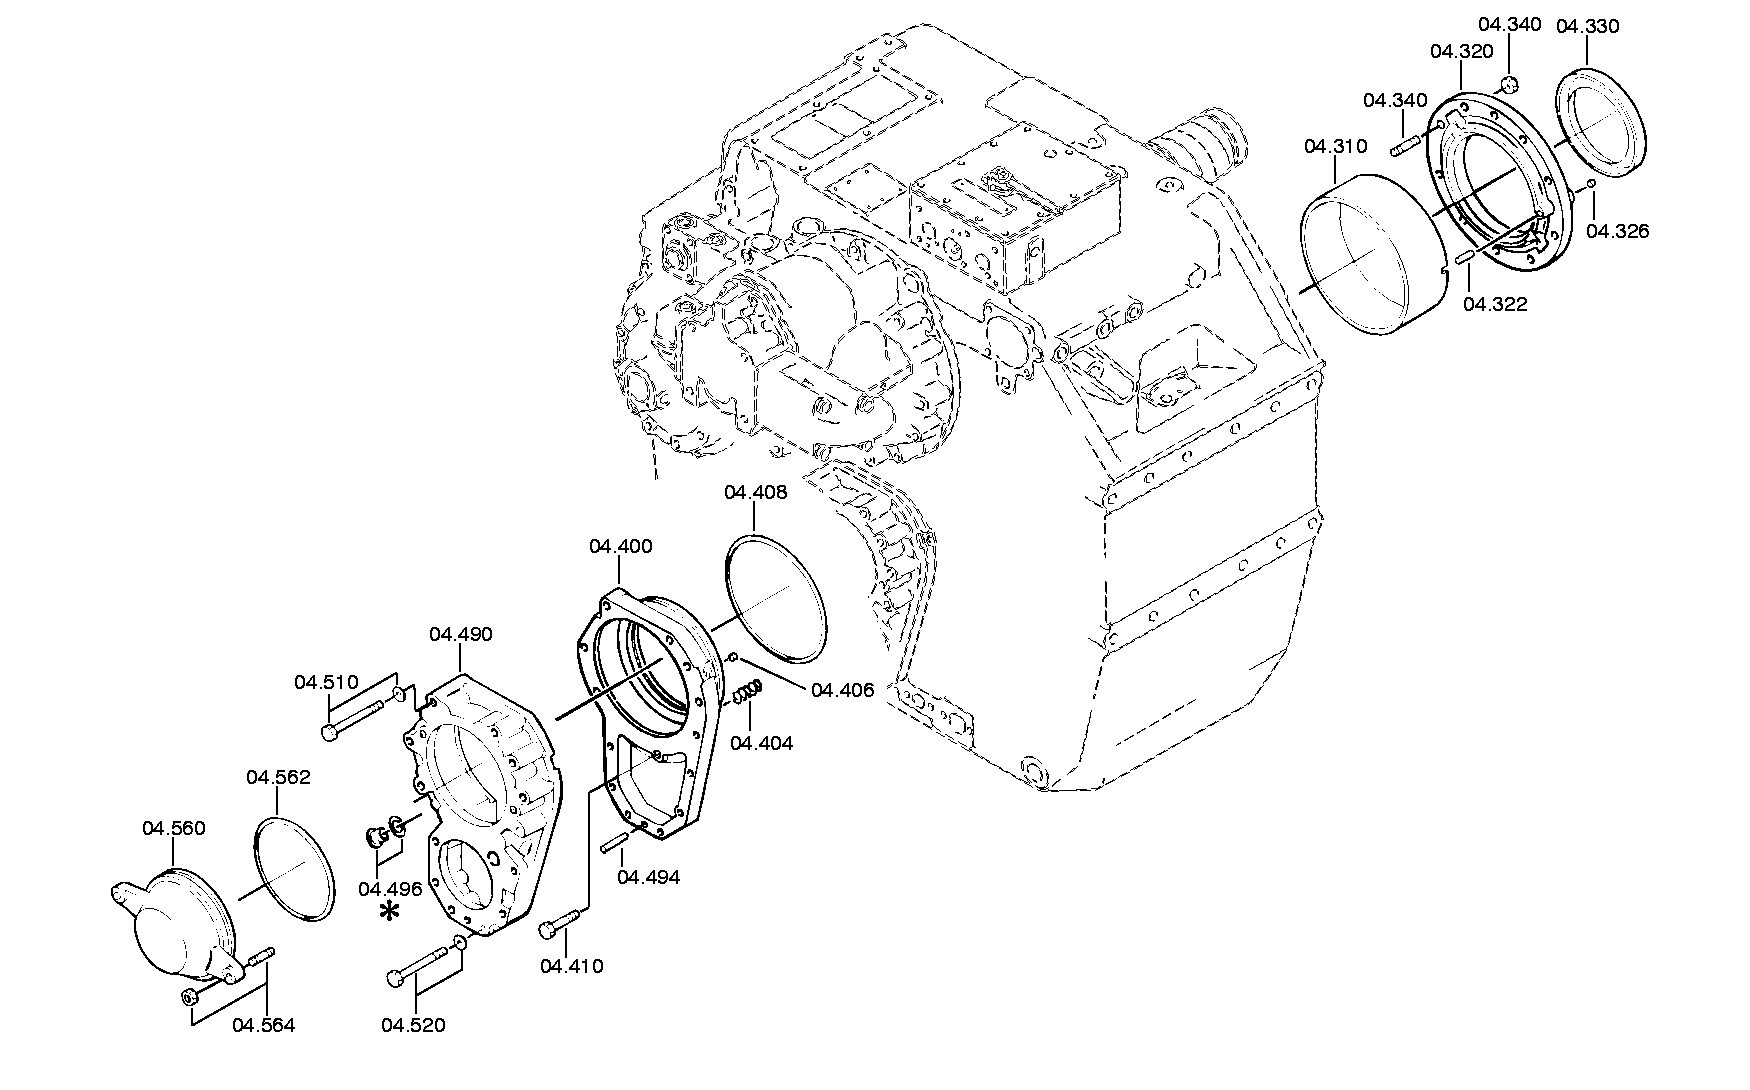 drawing for SCHOPF MASCHINENBAU GMBH 26835 - HEXAGON NUT (figure 4)